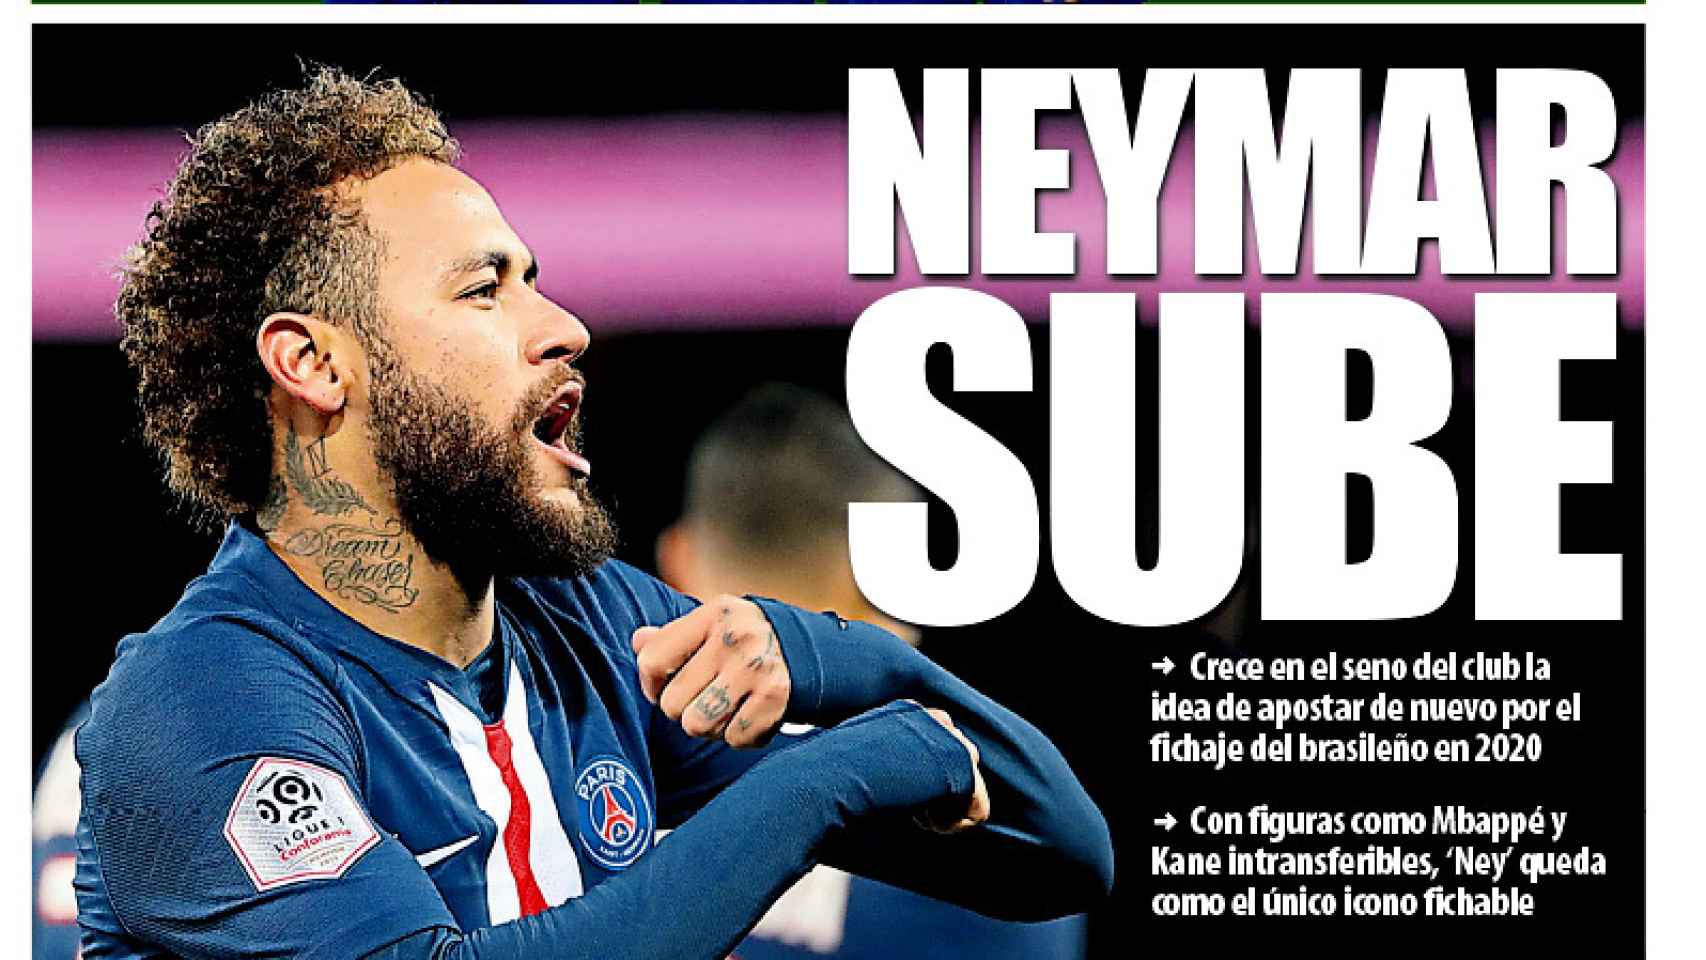 La portada del diario Mundo Deportivo (02/01/2020)